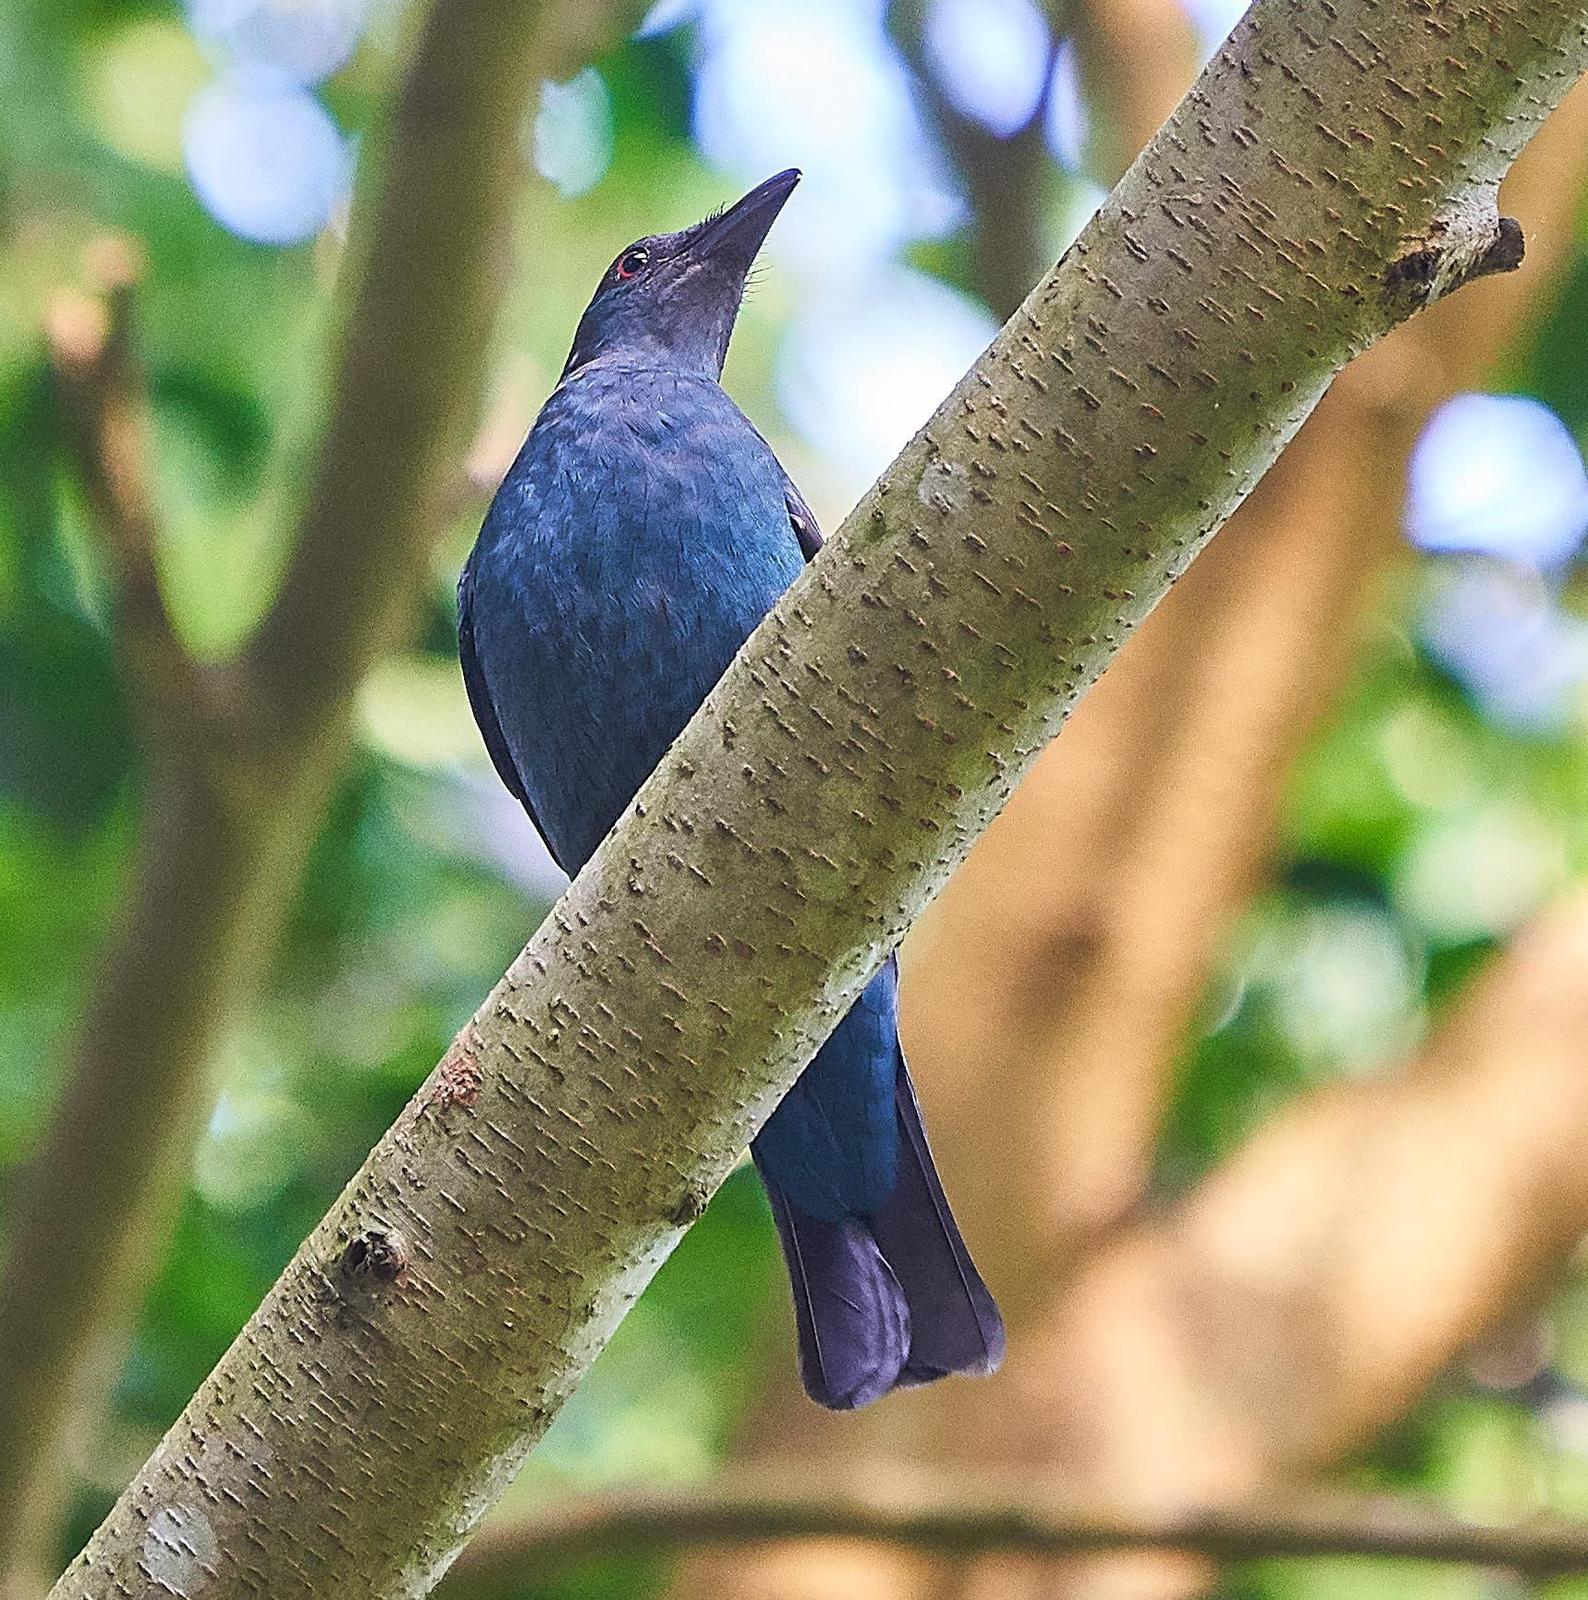 Asian Fairy-bluebird Photo by Steven Cheong